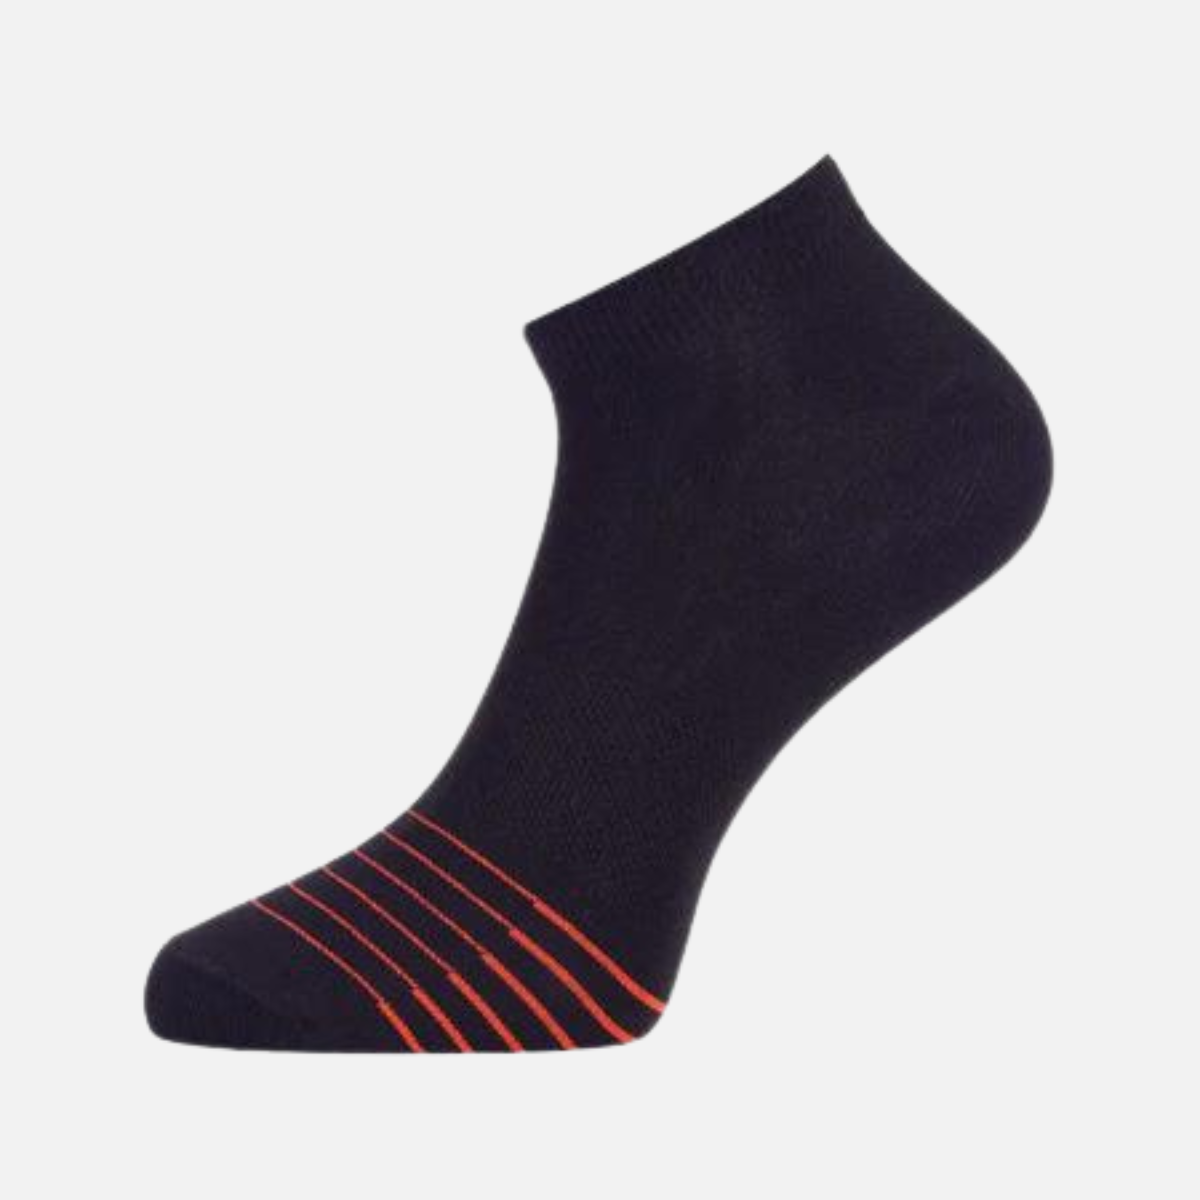 Adidas Flat Knit Low Cut Women's Socks (3 pairs)